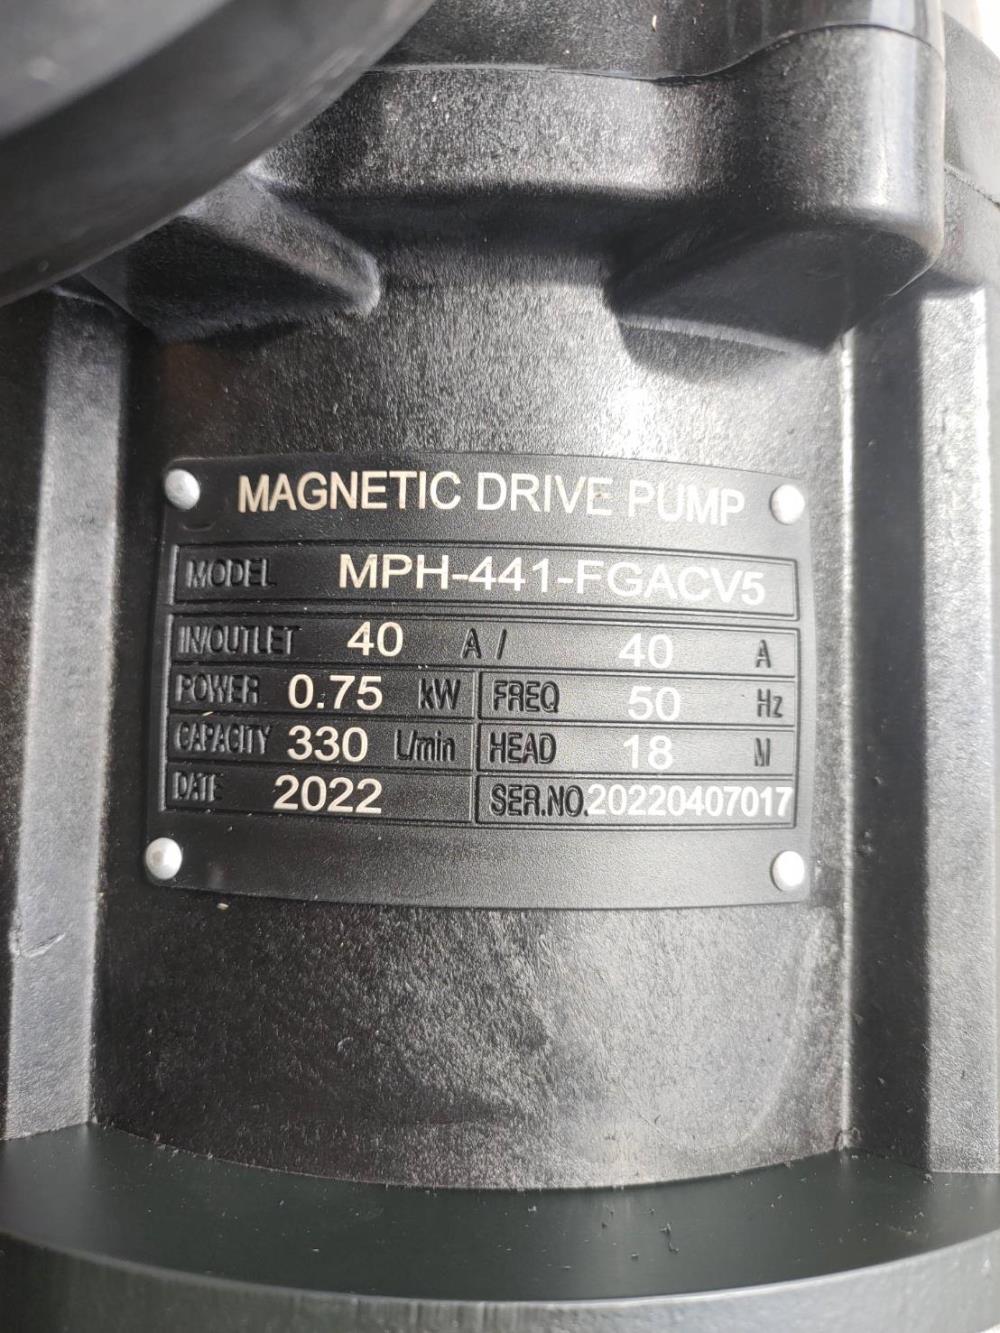 Magnetic drive pump